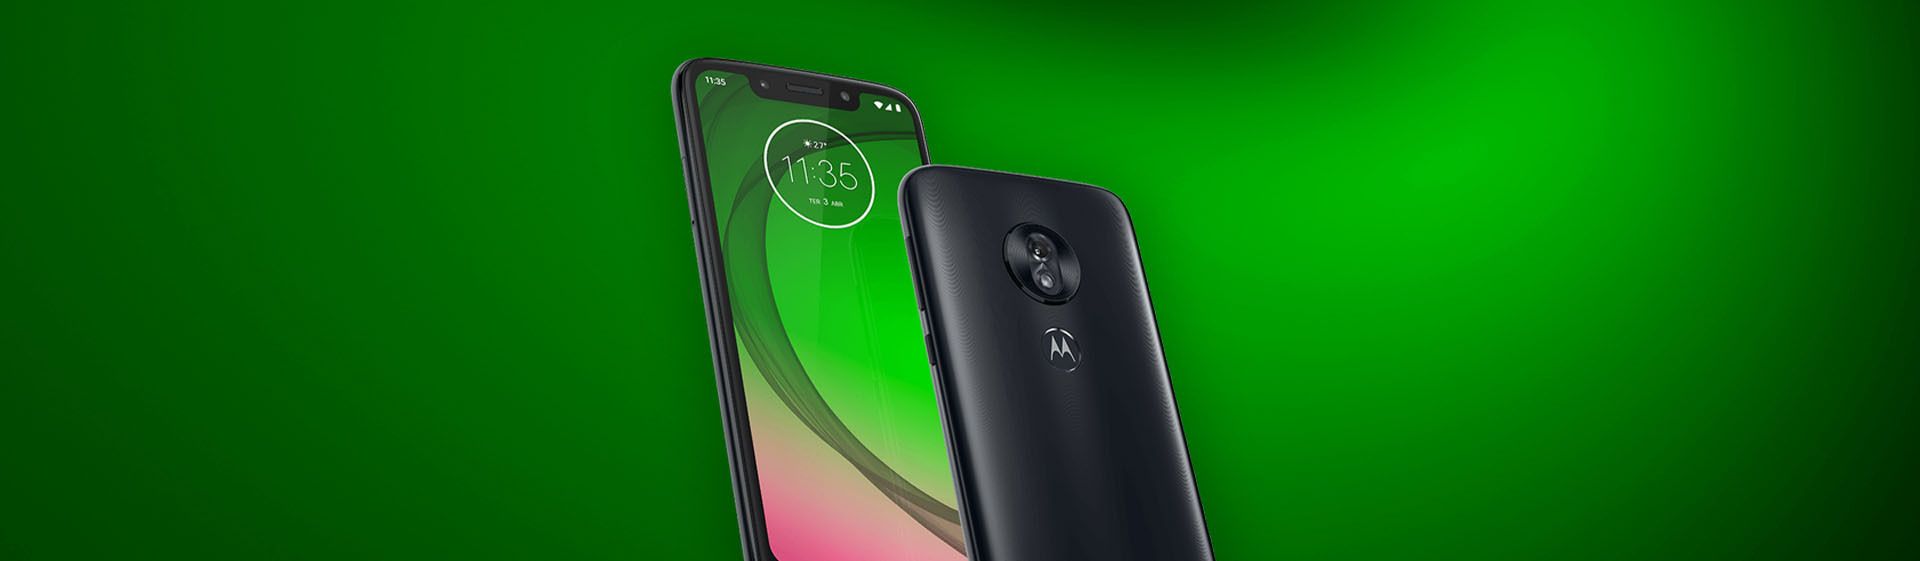 Os 13 Melhores Celulares Motorola em 2019